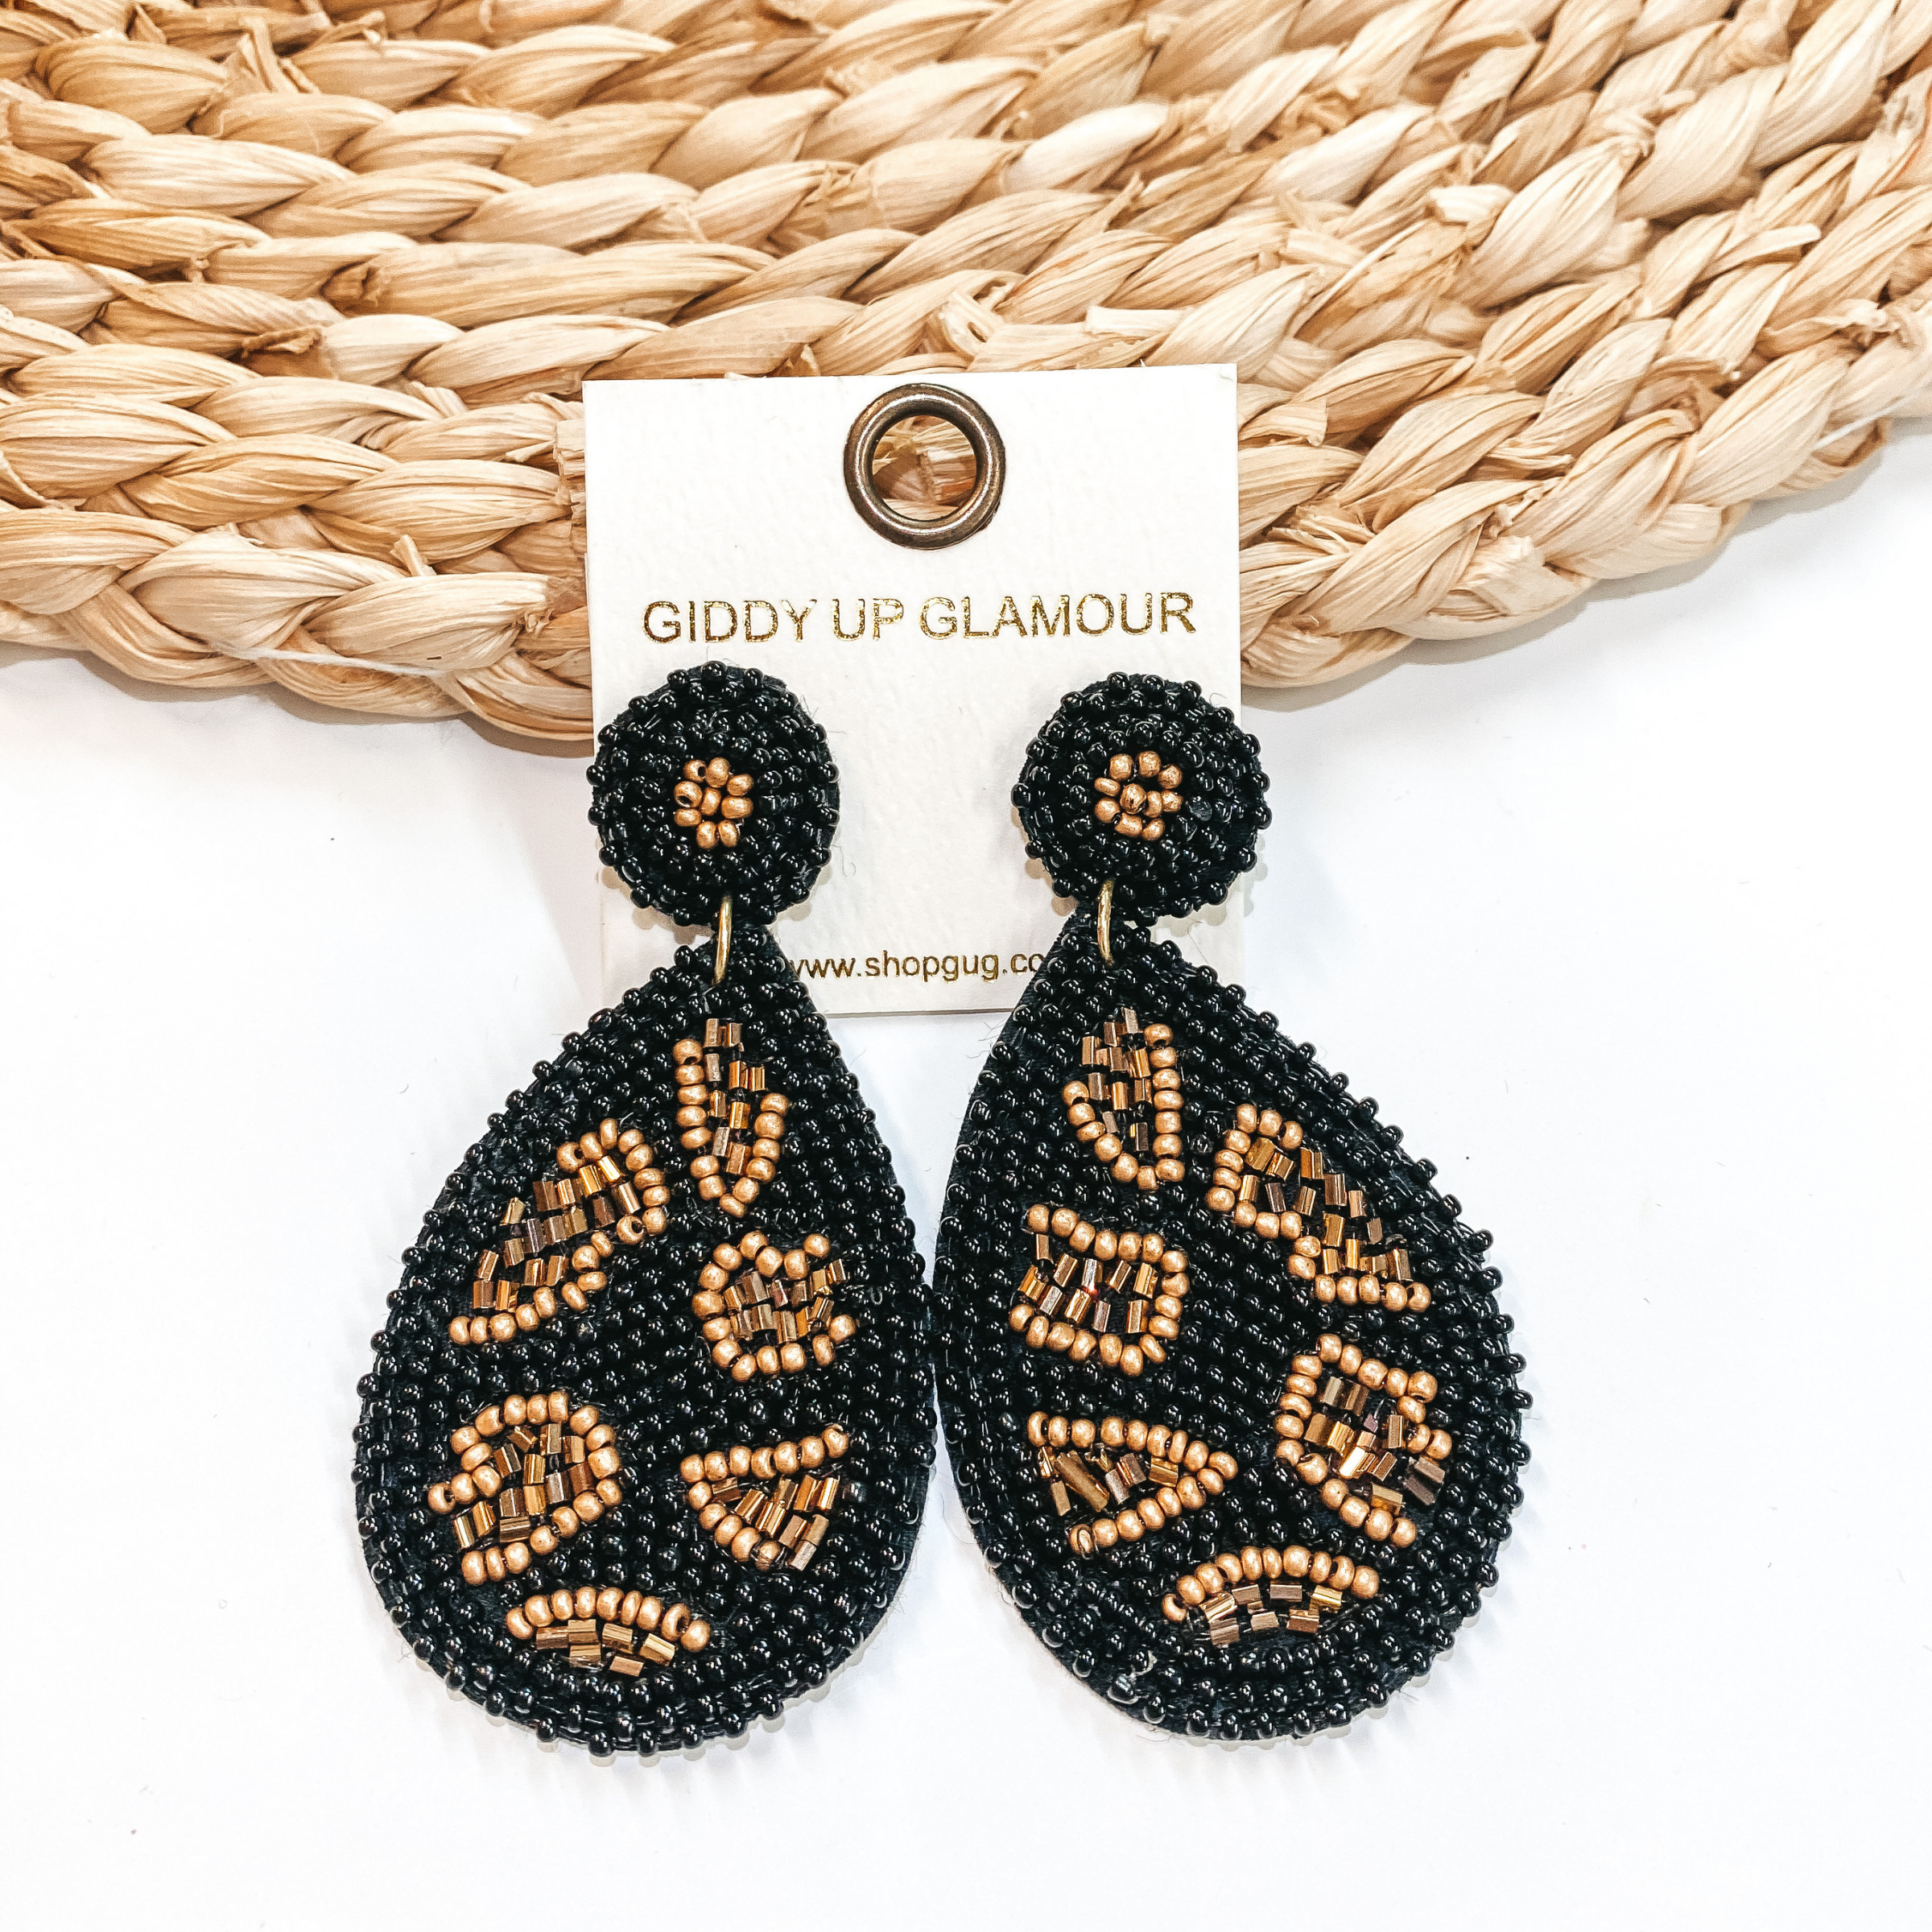 Beaded Leopard Print Teardrop Earrings in Black - Giddy Up Glamour Boutique